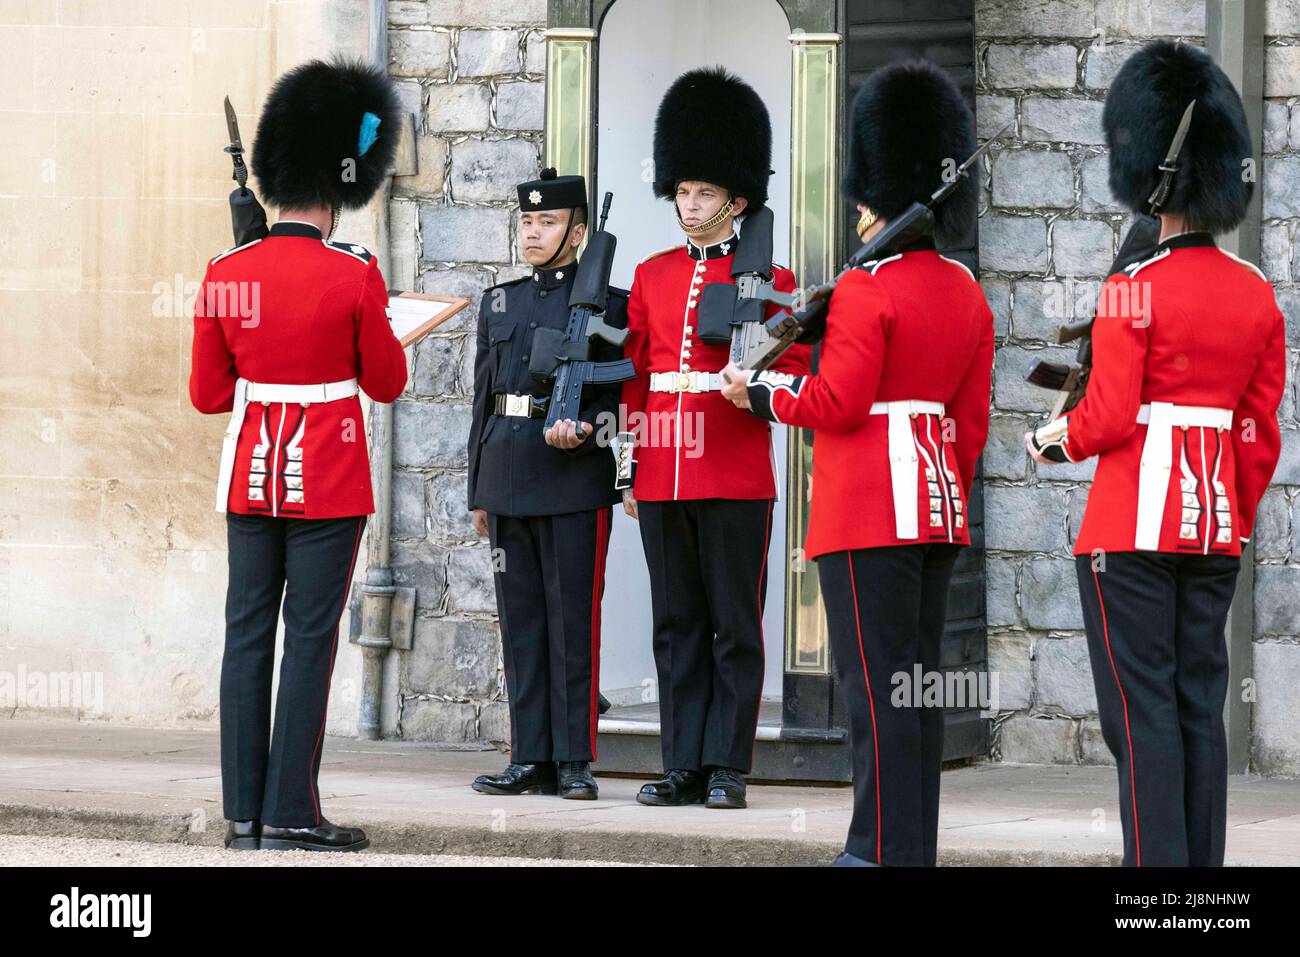 Wächter der irischen Wachen übernehmen zeremonielle Wachaufgaben im Schloss Windsor von den Gurkha's, während sich die irischen Wachen während einer Zeremonie darauf vorbereiten, ihre neuen Regimentsfarben vom Herzog von Cambridge zu erhalten. Bilddatum: Dienstag, 17. Mai 2022. Stockfoto